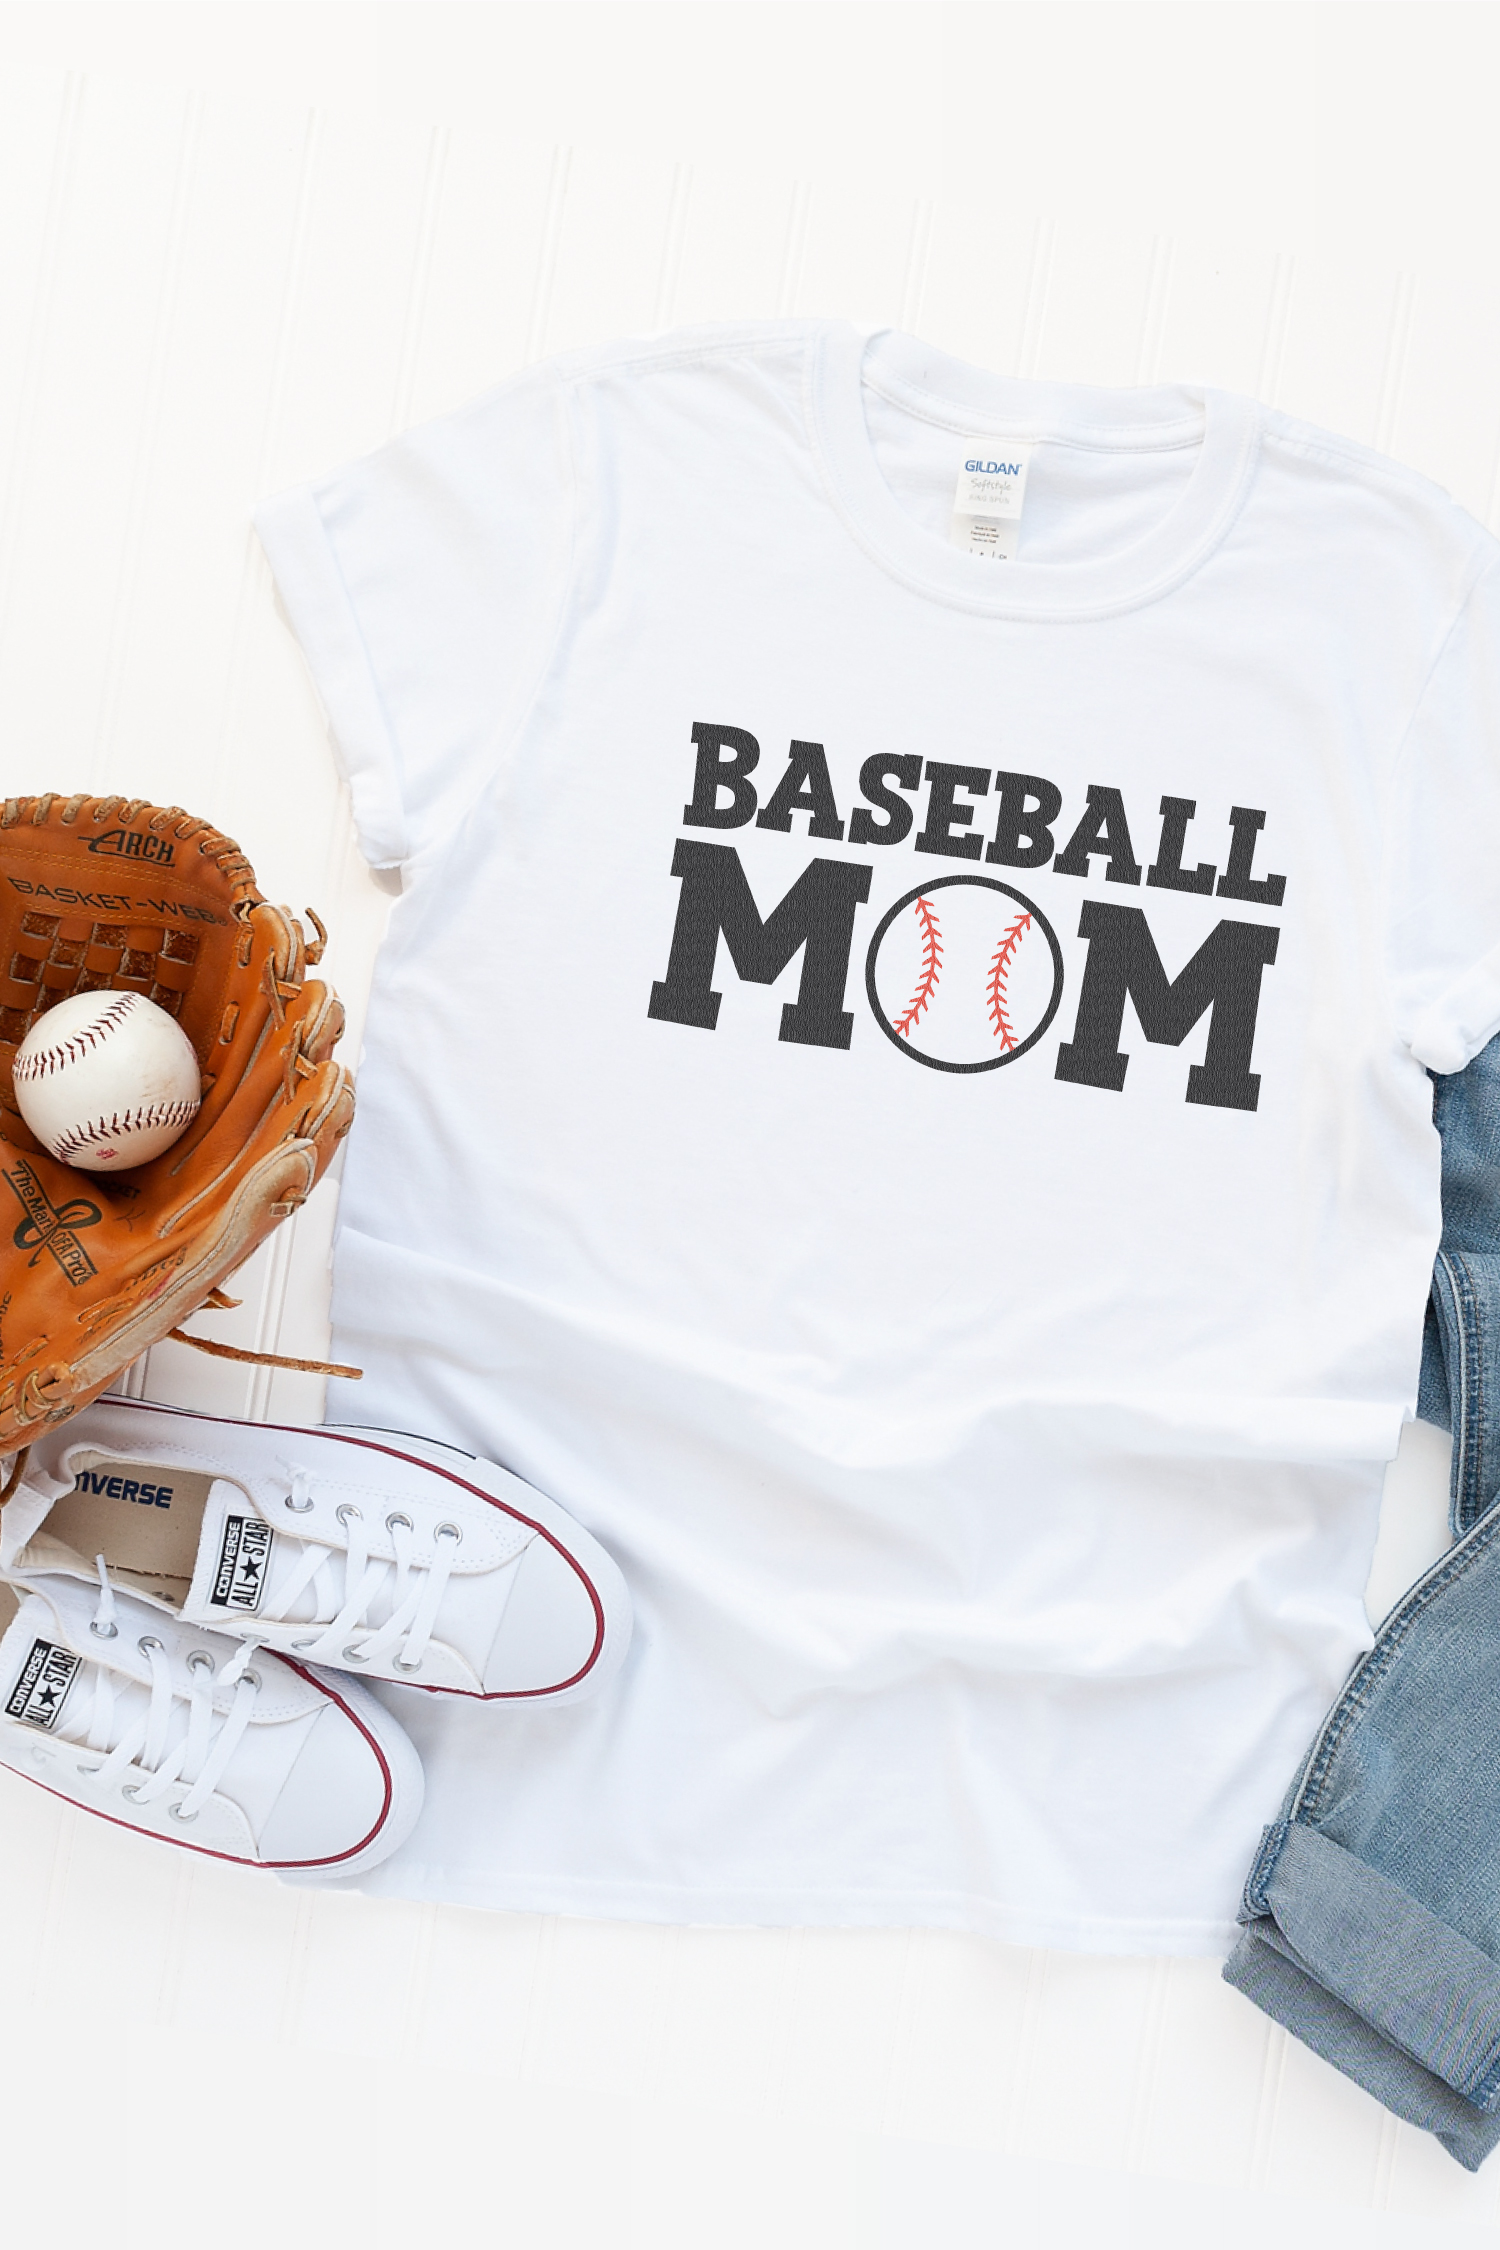 Baseball Mom Shirts Baseball Mom T-shirt Peanuts and 